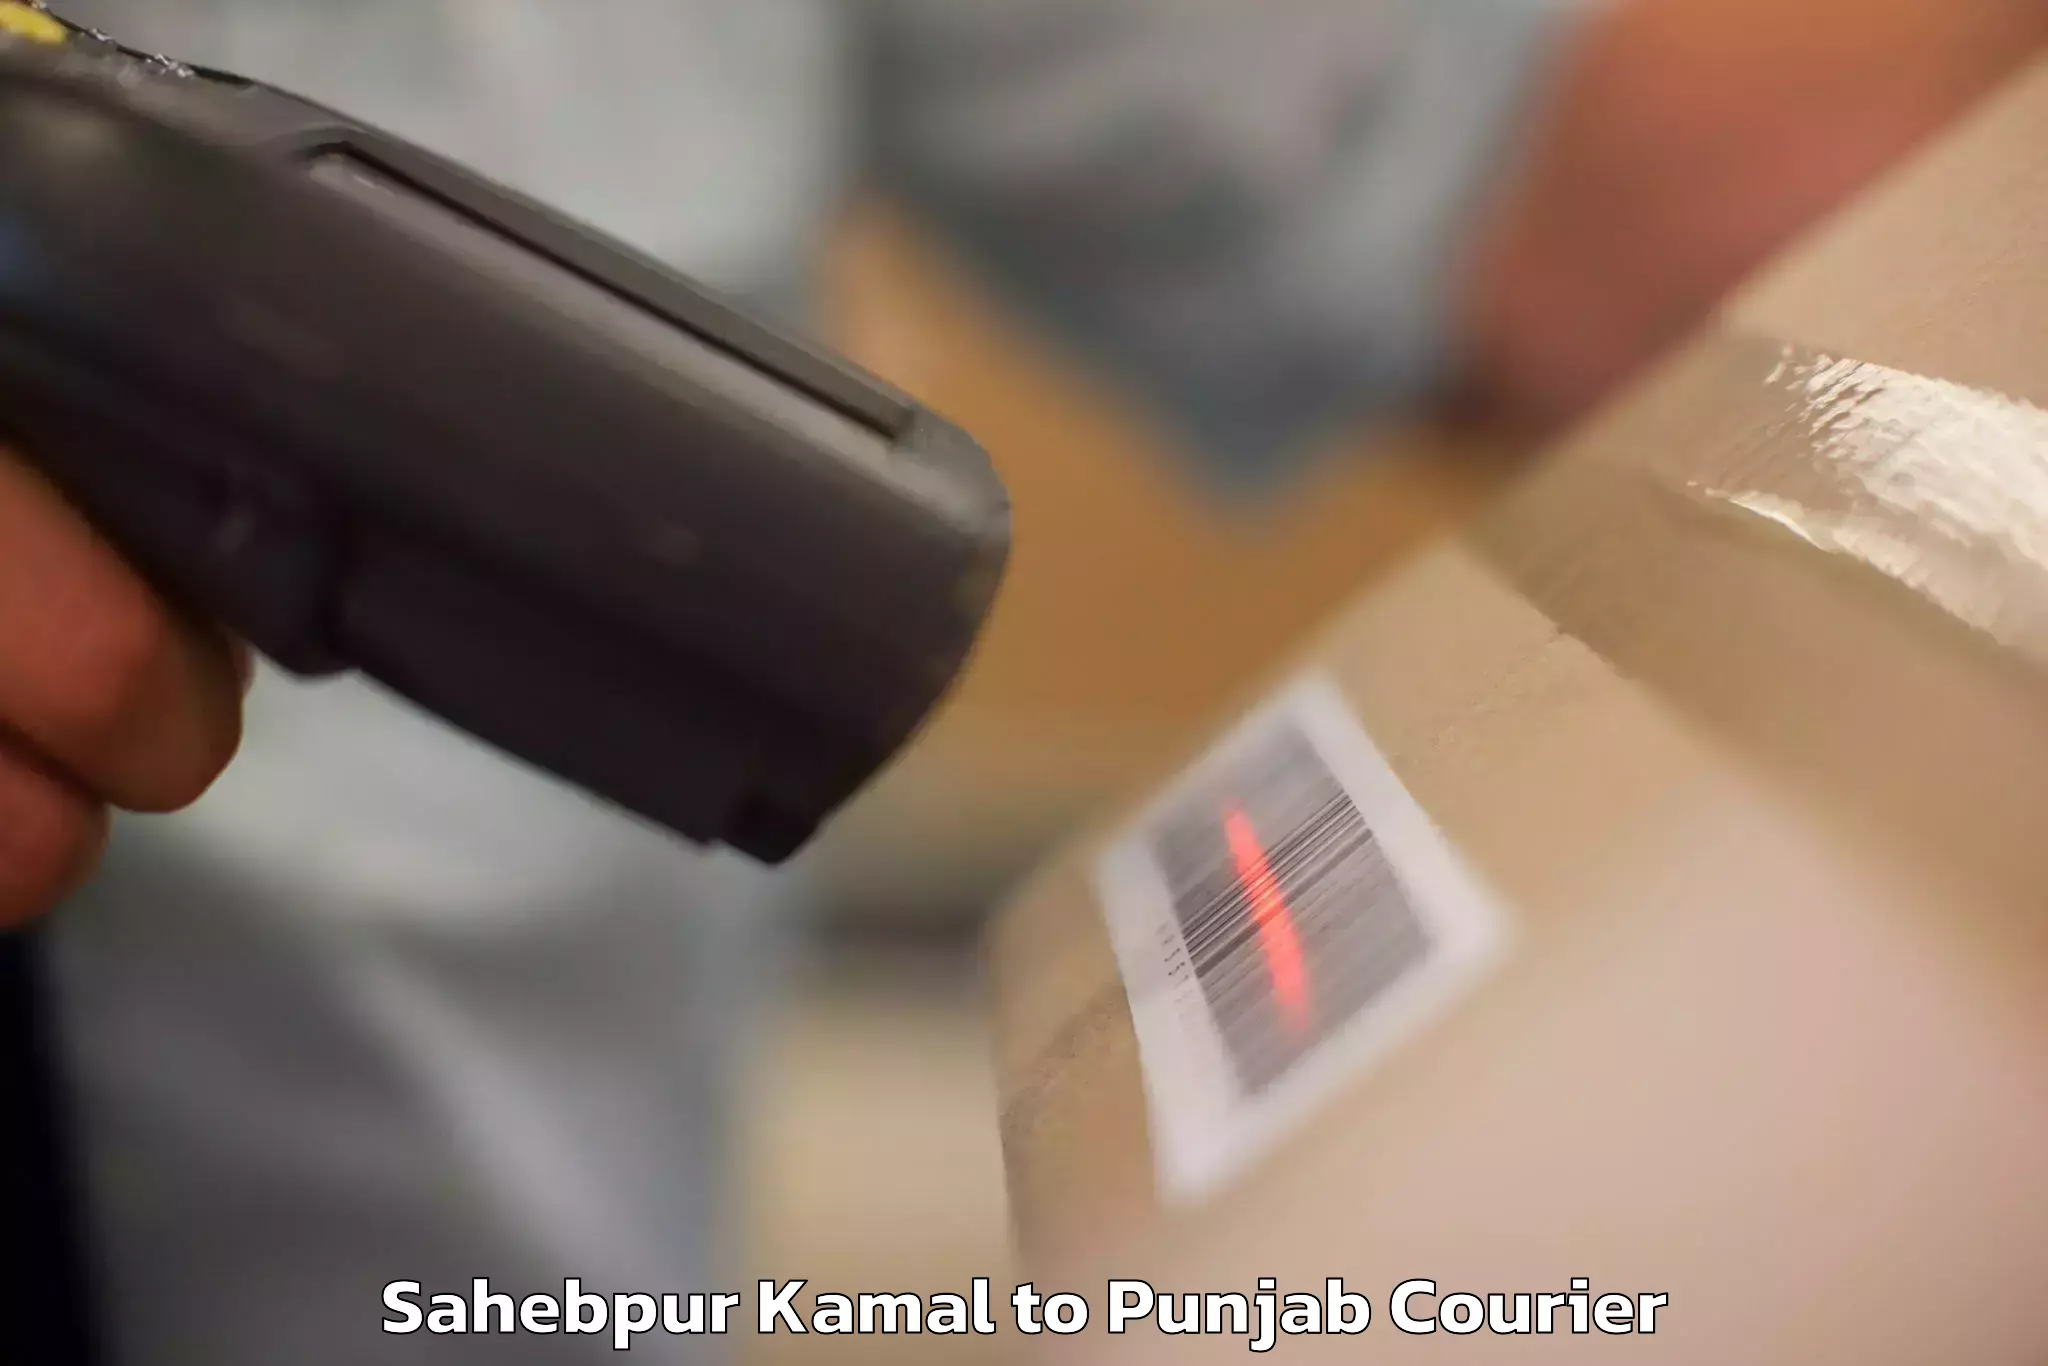 Luggage shipment tracking Sahebpur Kamal to Goindwal Sahib